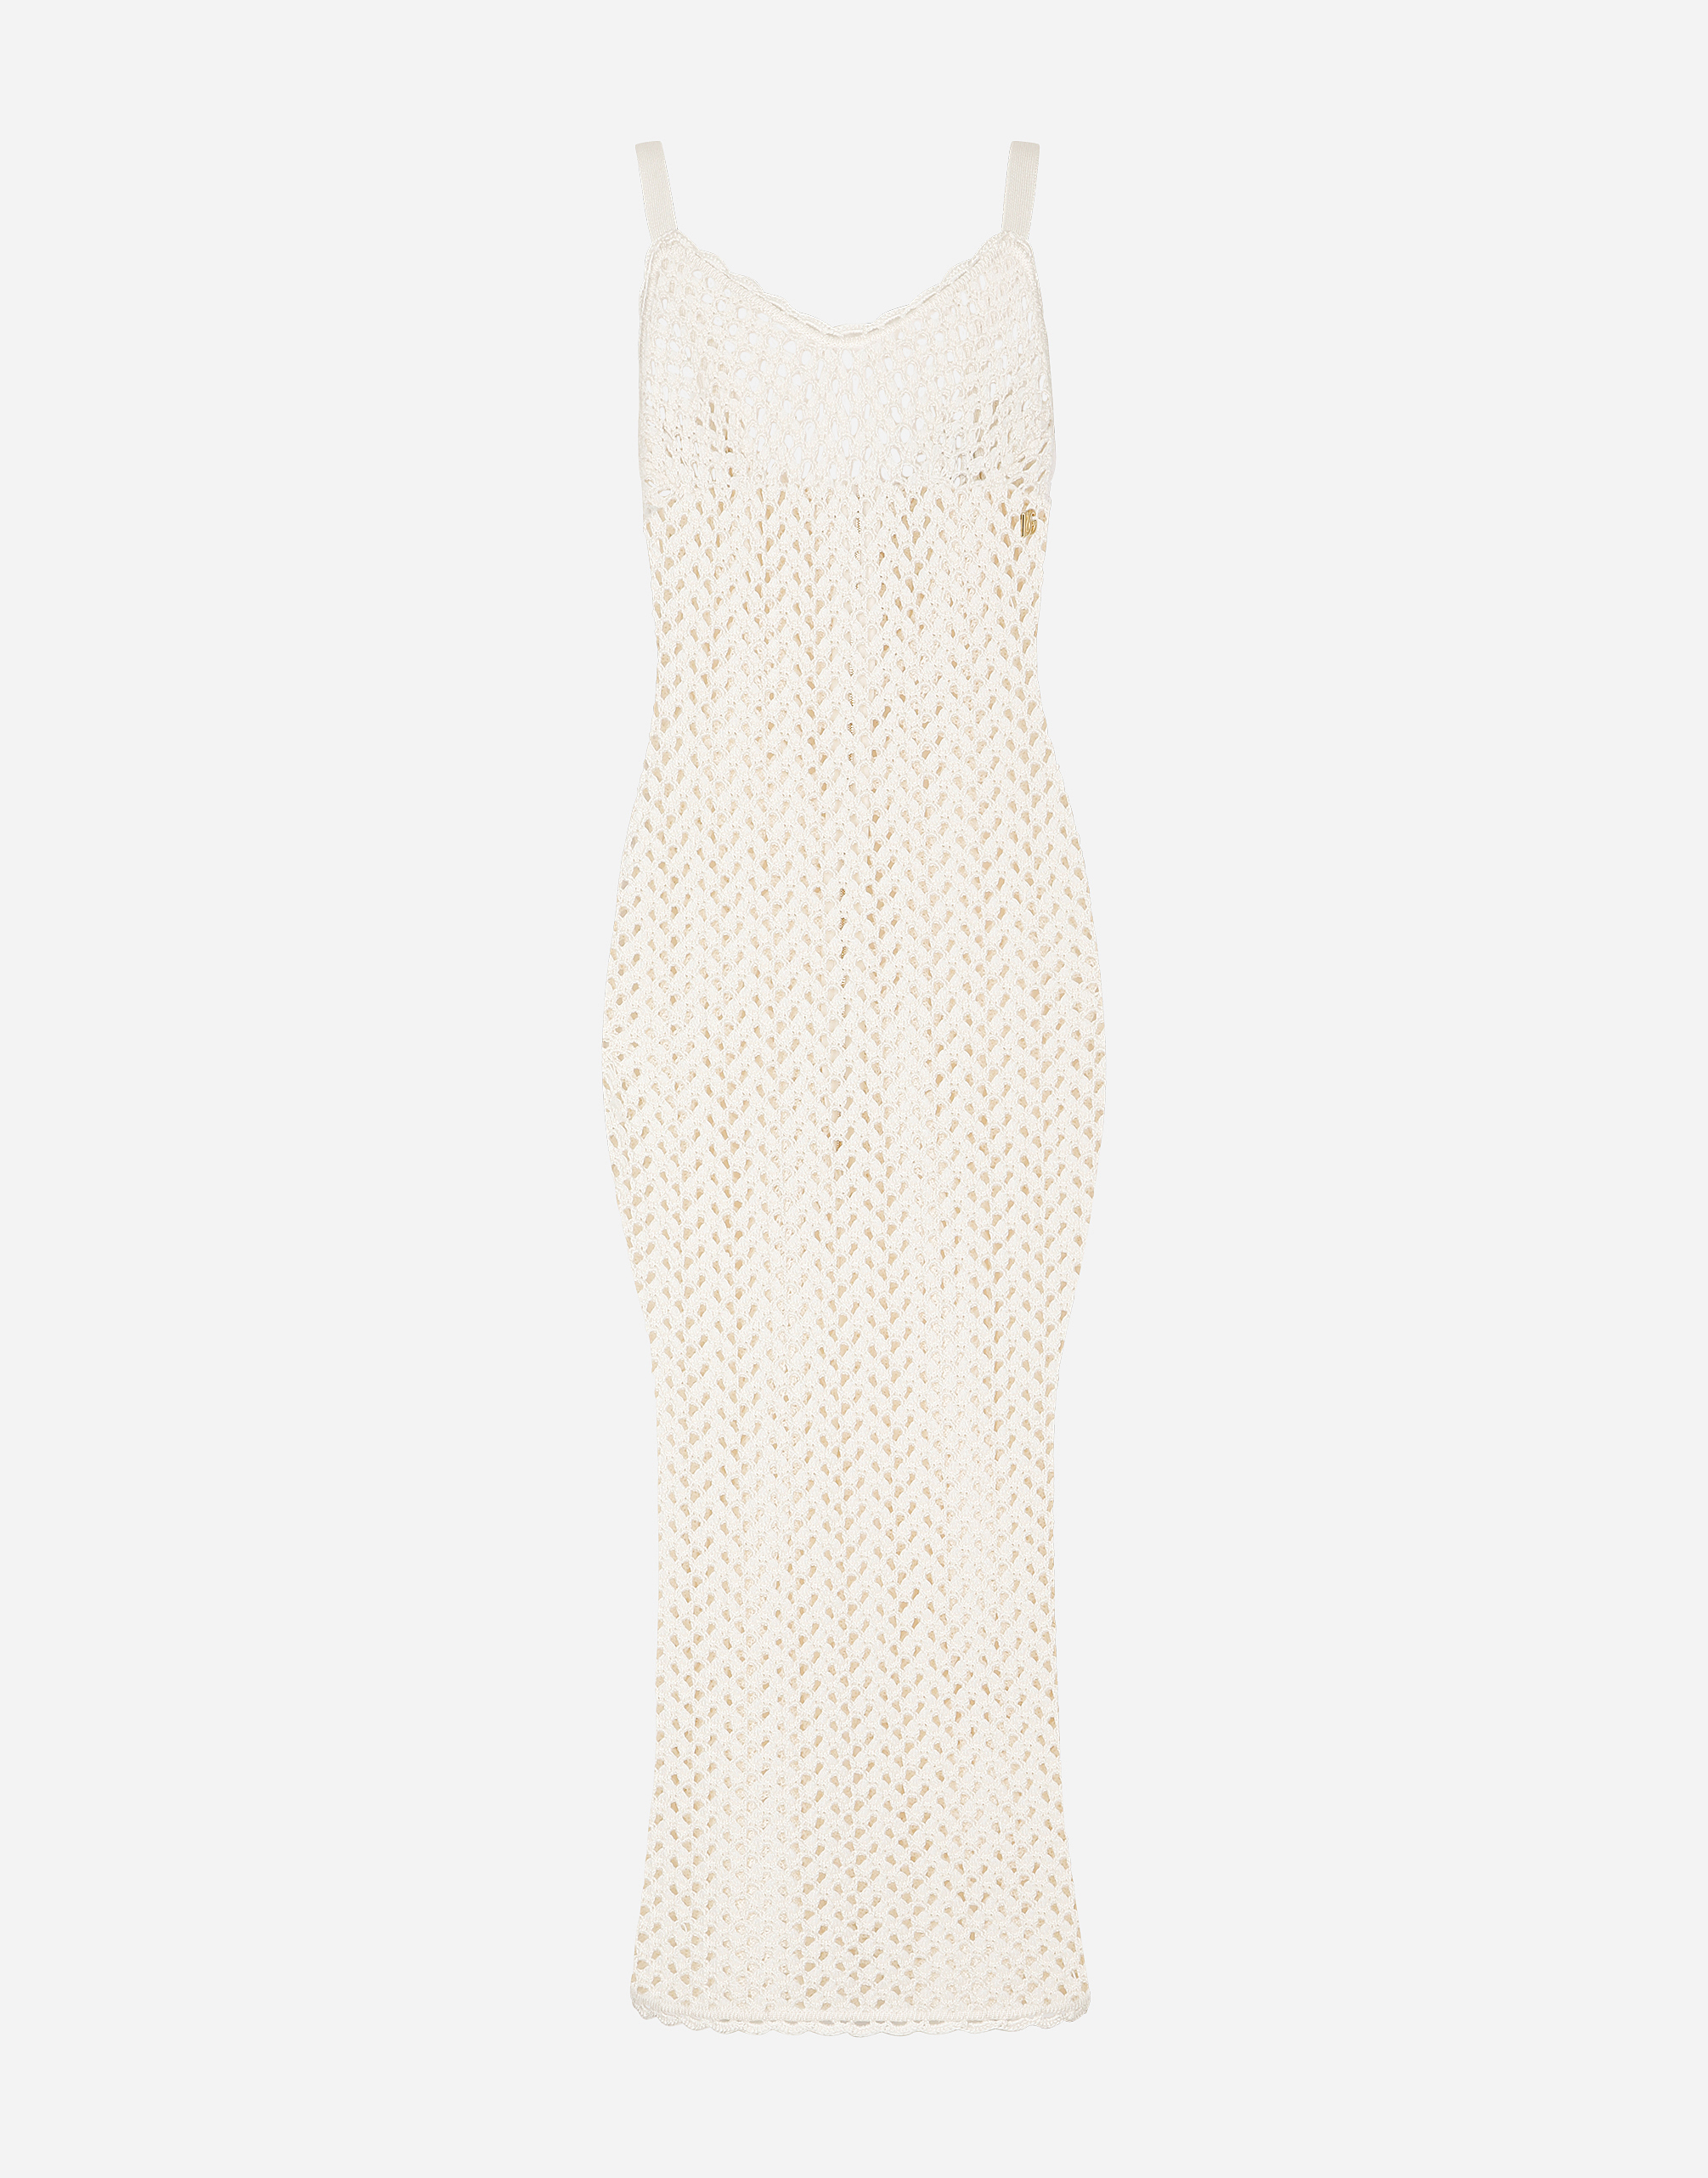 Crochet slip dress in White